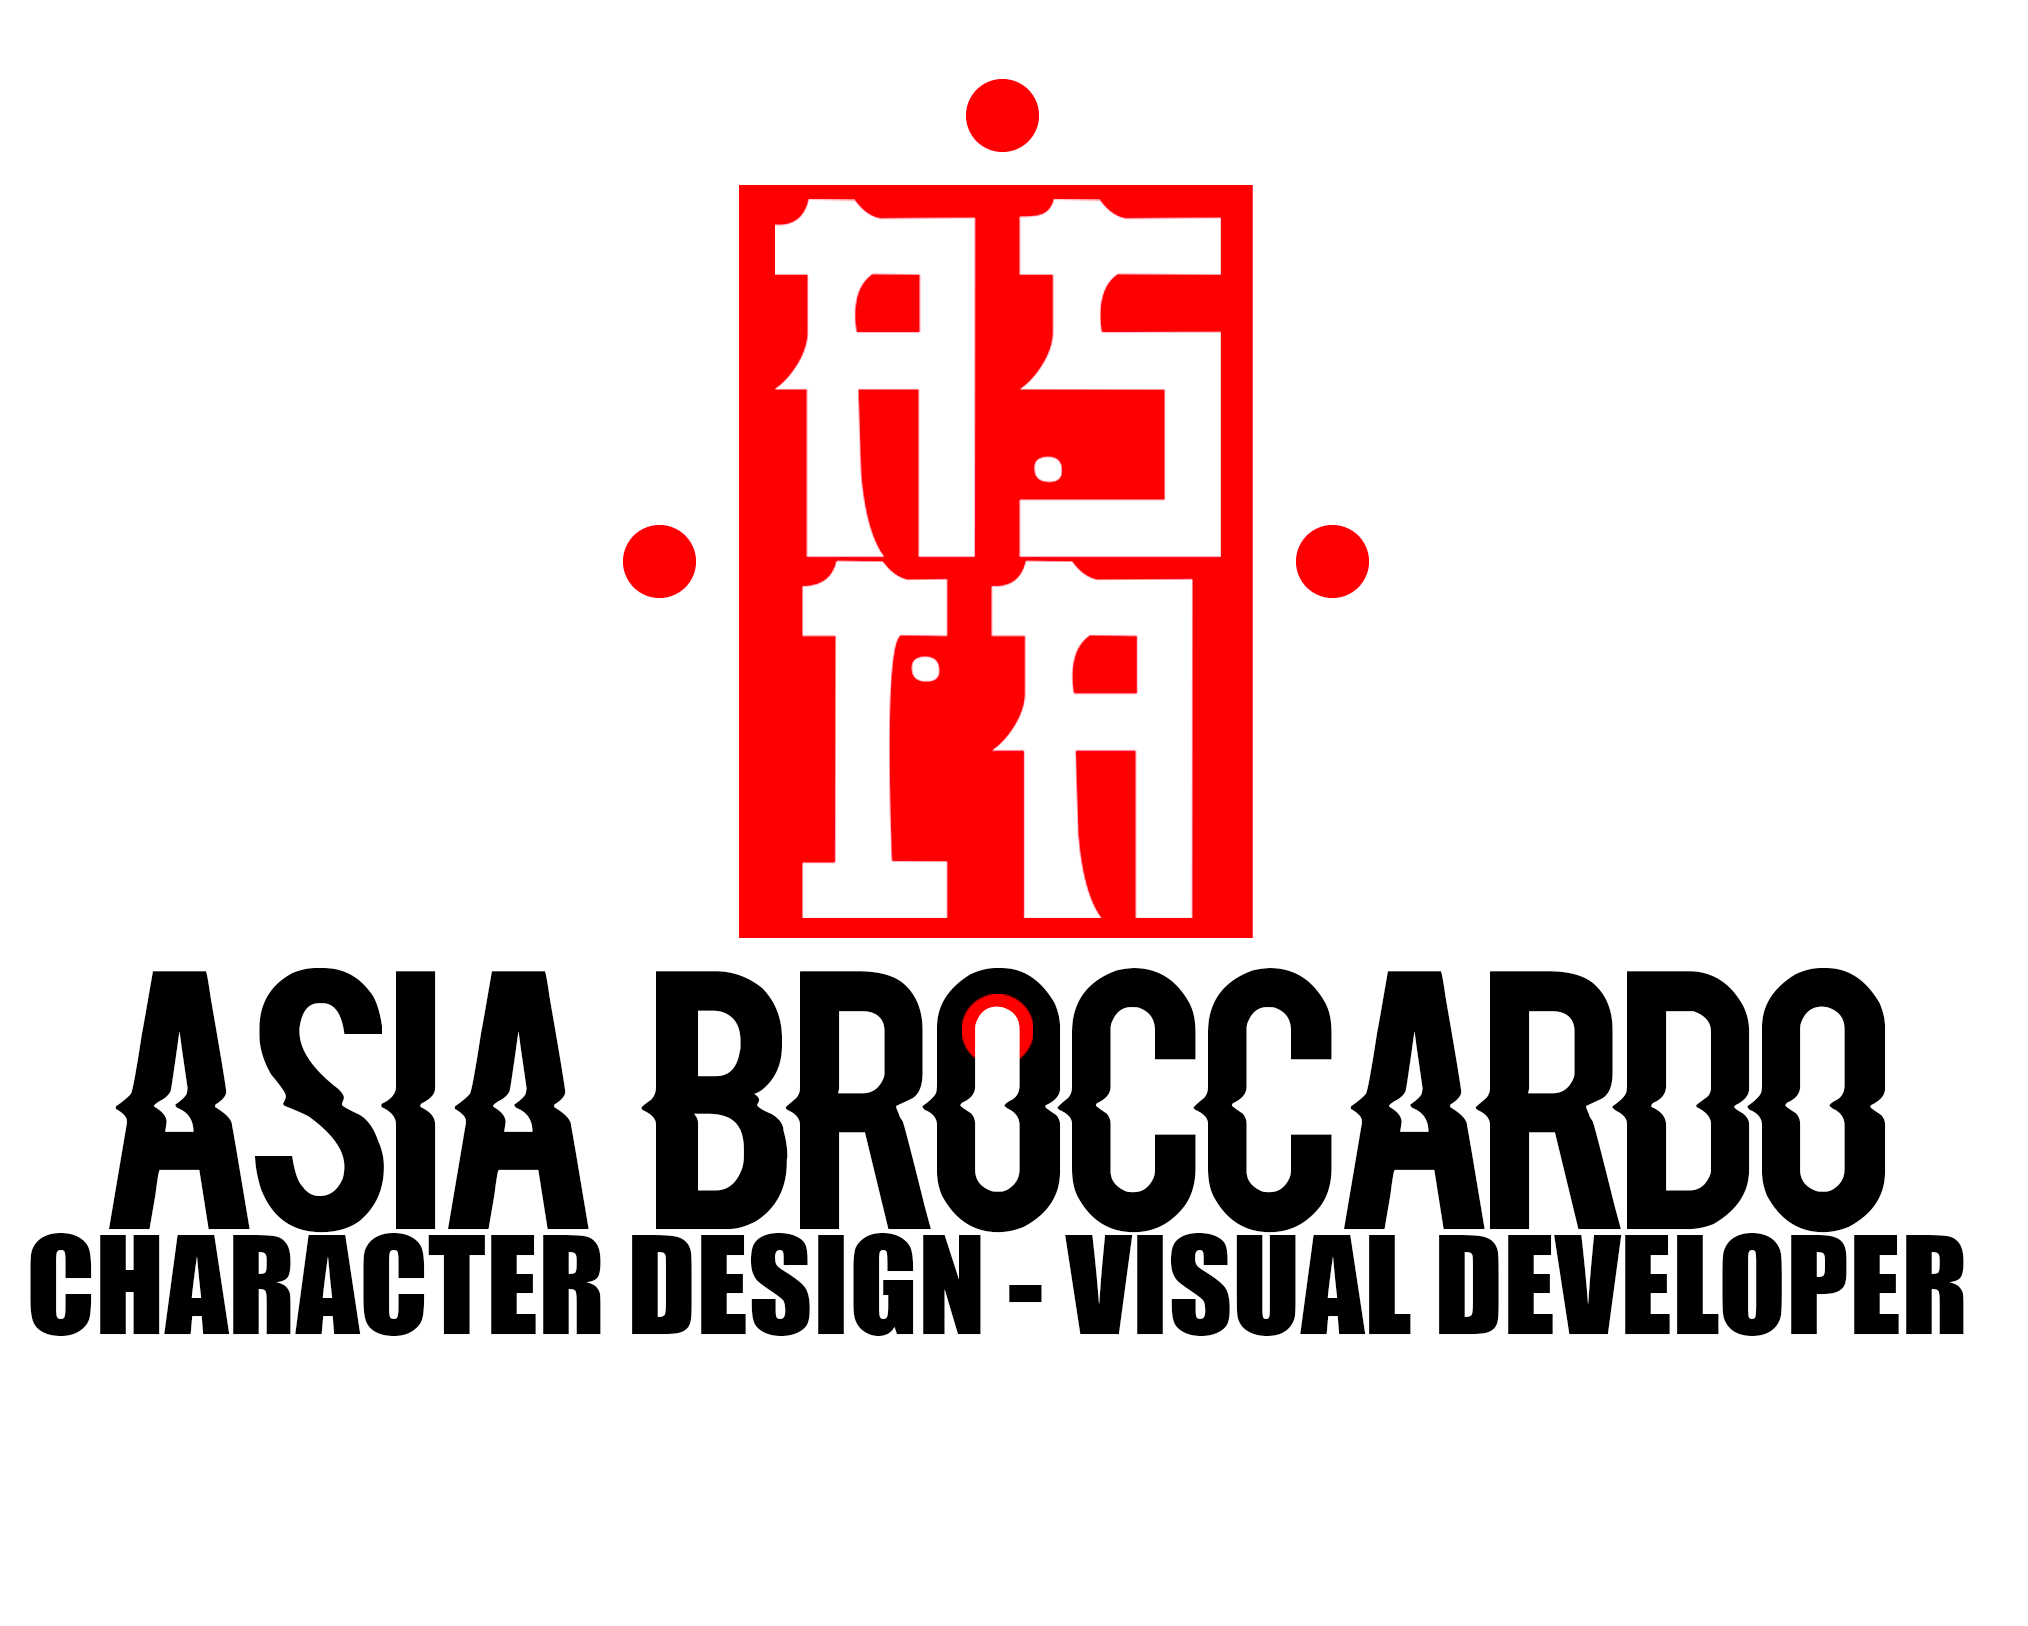 Asia Broccardo